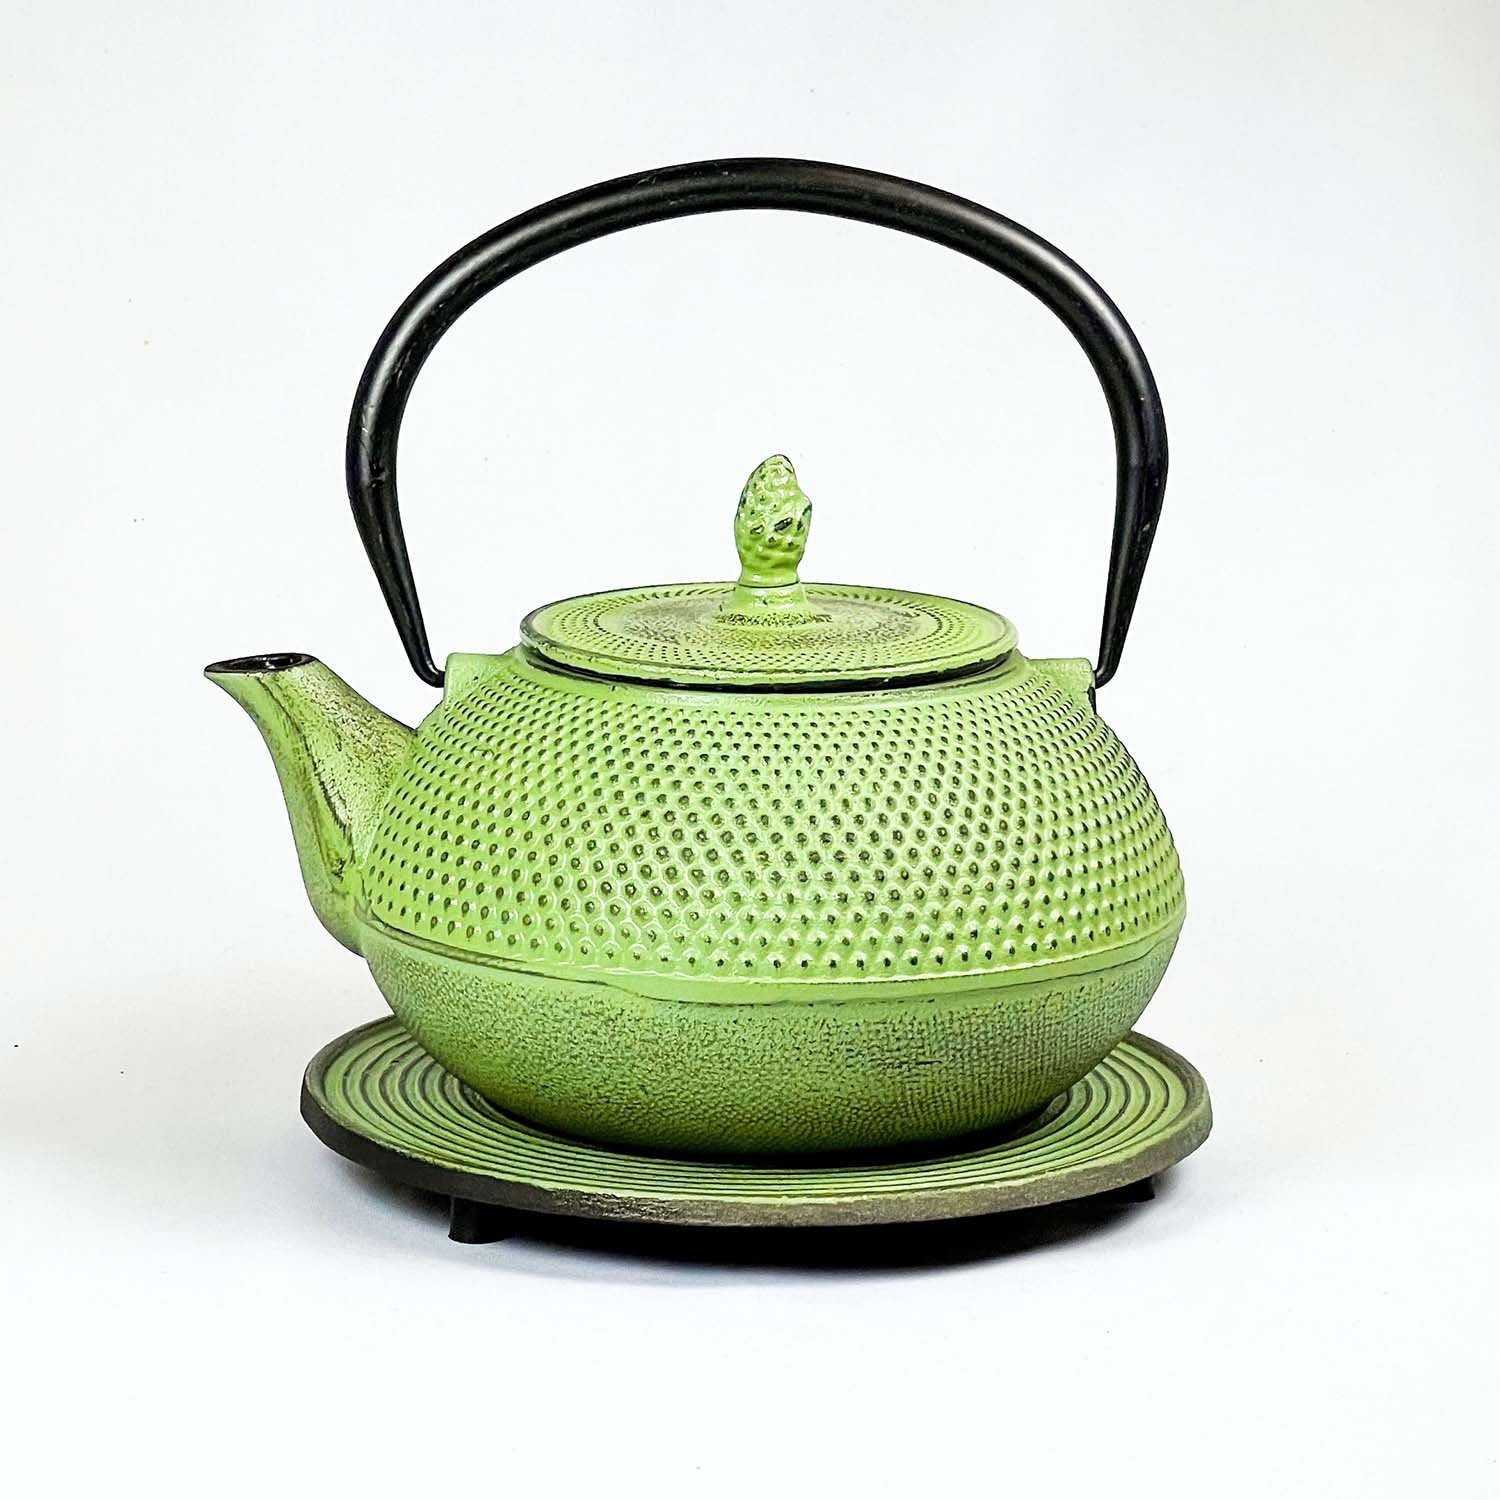 JA-UNENDLICH Teekanne Basic grün, 1.2 l, aus Gusseisen handgefertigt im Sandgussverfahren, innen emailliert Olive